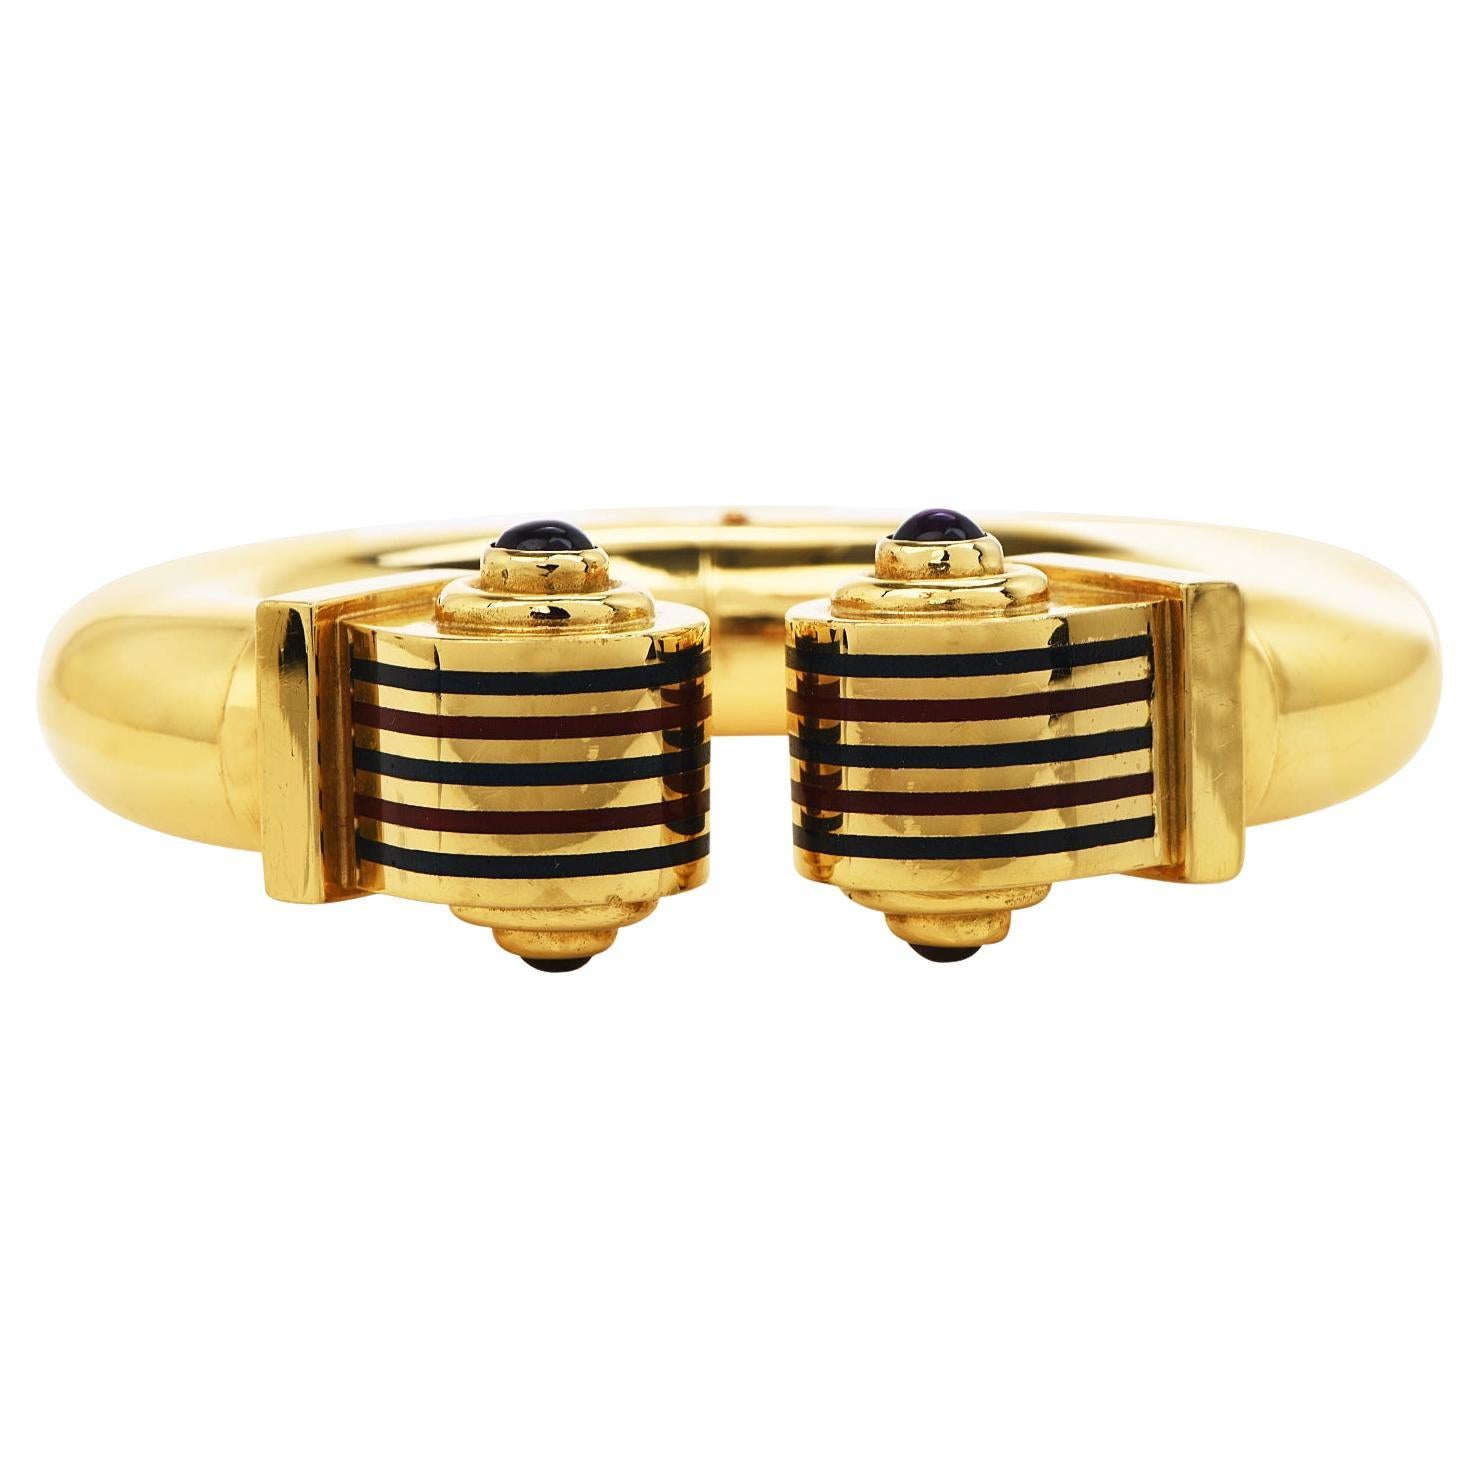  Estate High polish Italian Gold Amethyst Enamel Cuff Bangle  Bracelet  For Sale